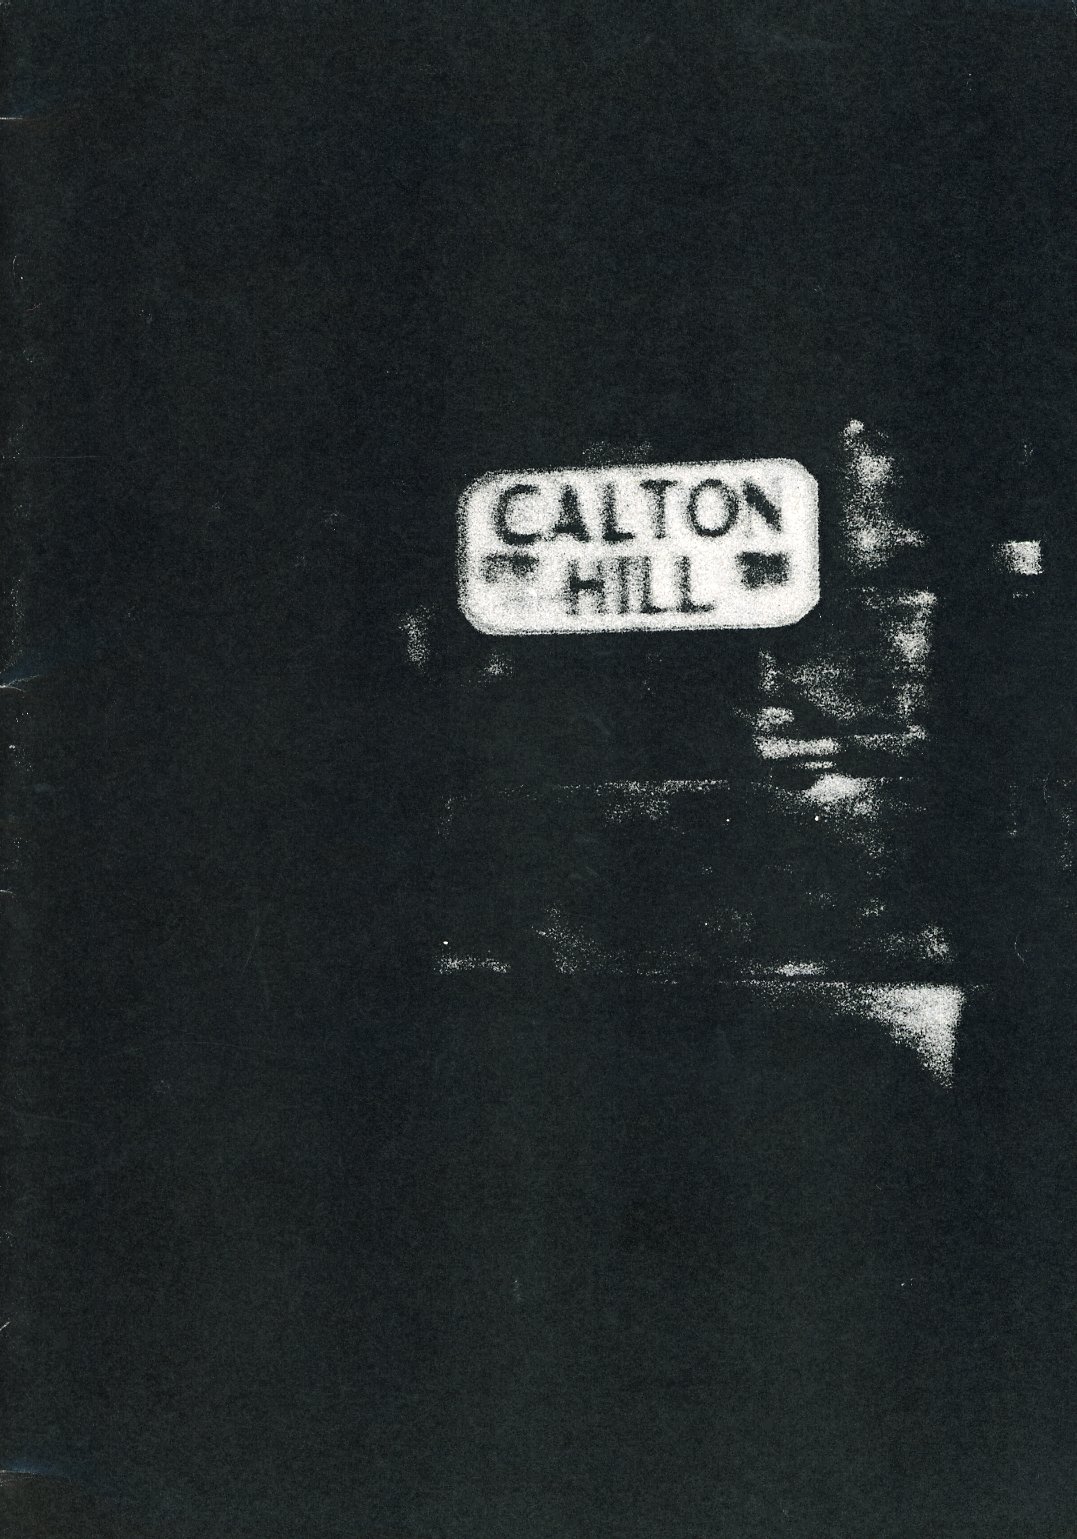 Calton Hill, Craig Atkinson